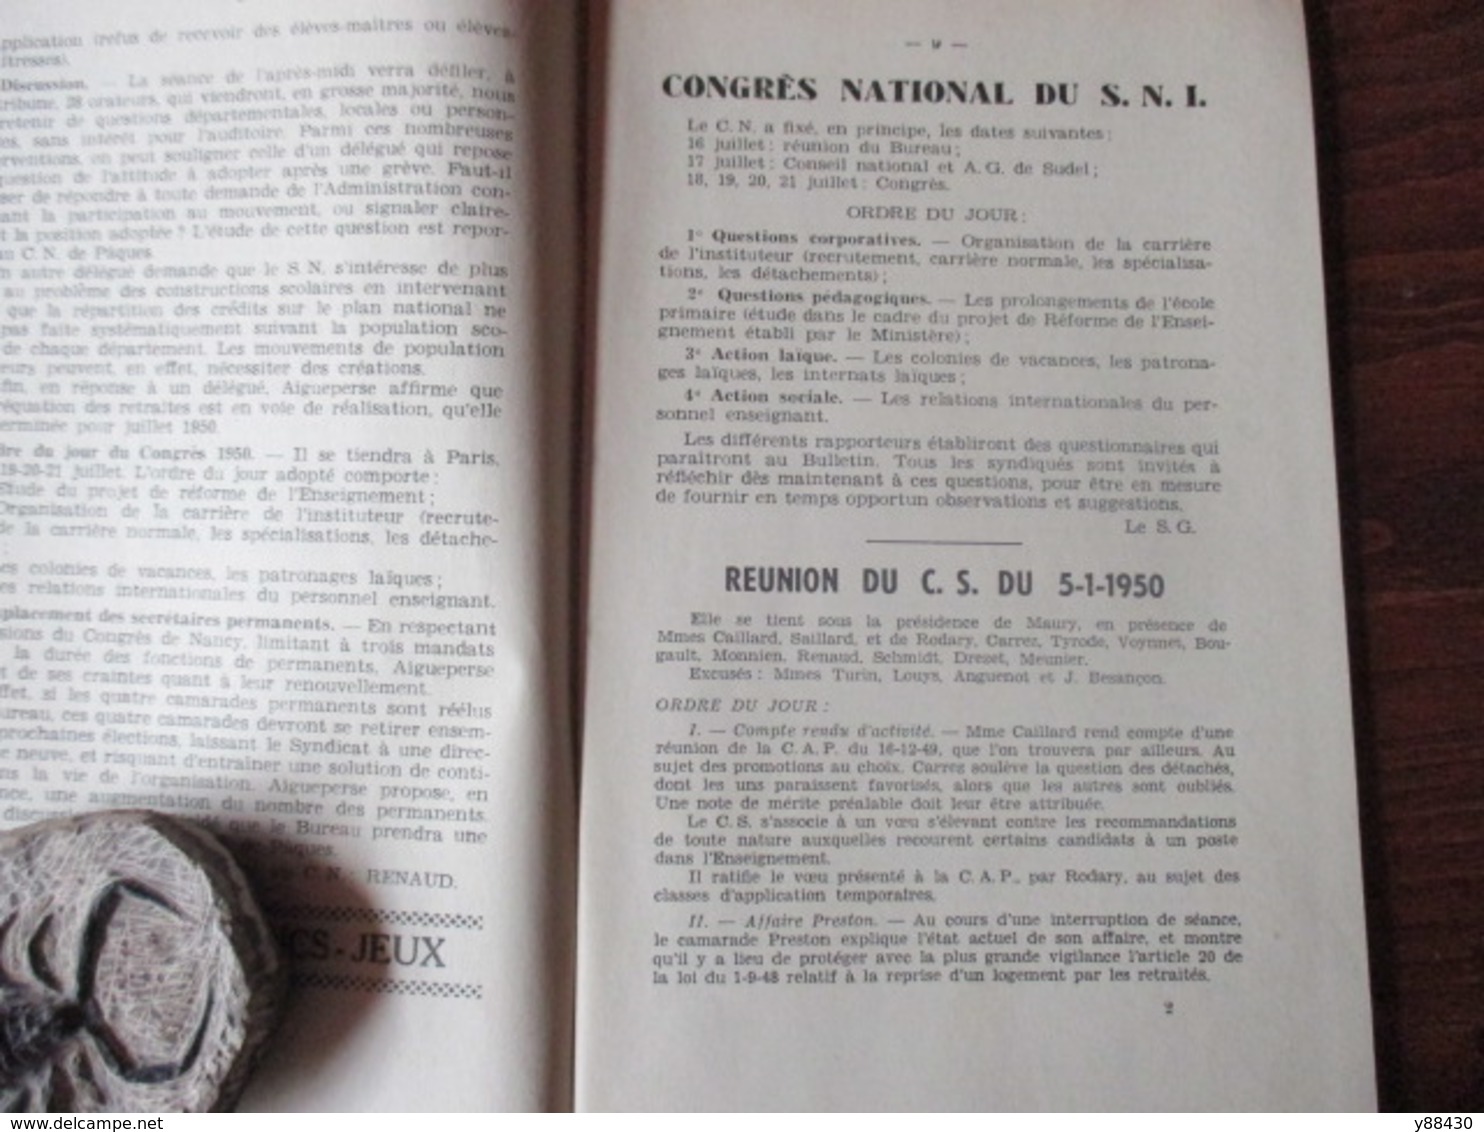 BULLETIN De La Fédération De L'Education Nationale Du DOUBS à BESANCON - Année 1950 . N°3 - 84 Pages -24 Scan - Schede Didattiche